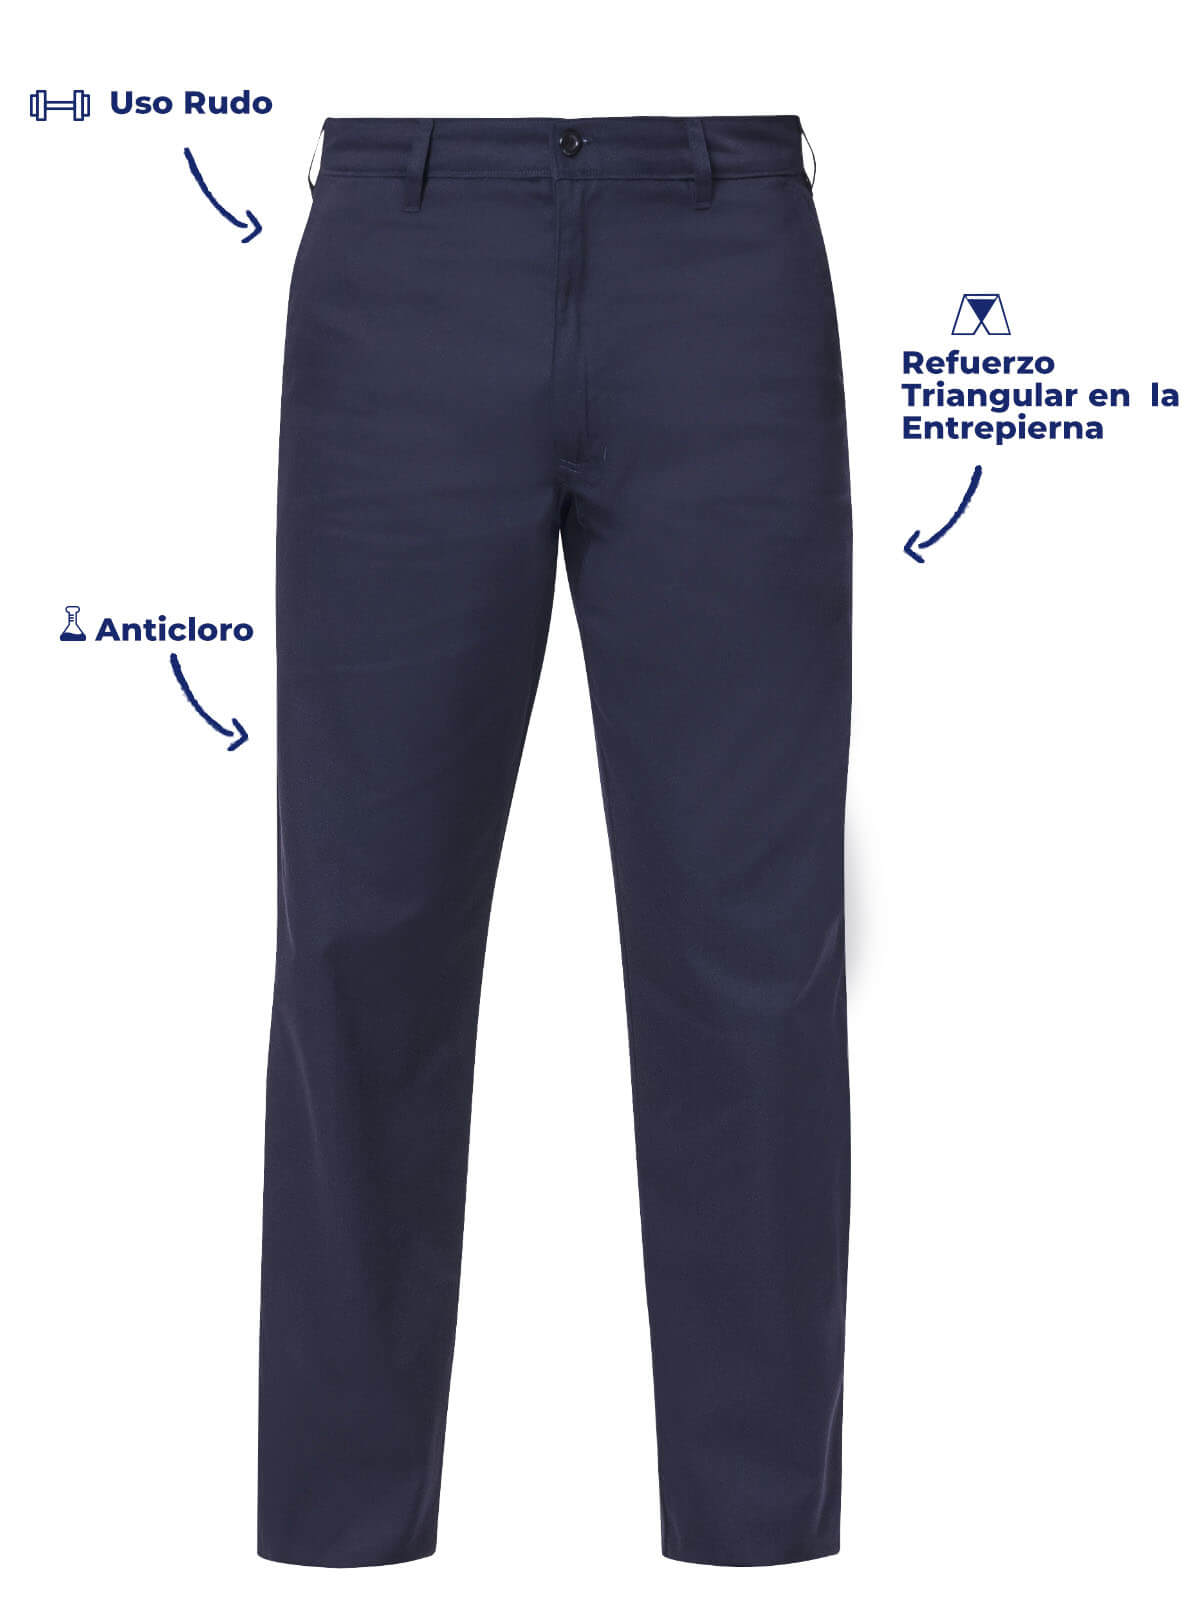 Pantalon Industrial color marino para caballero